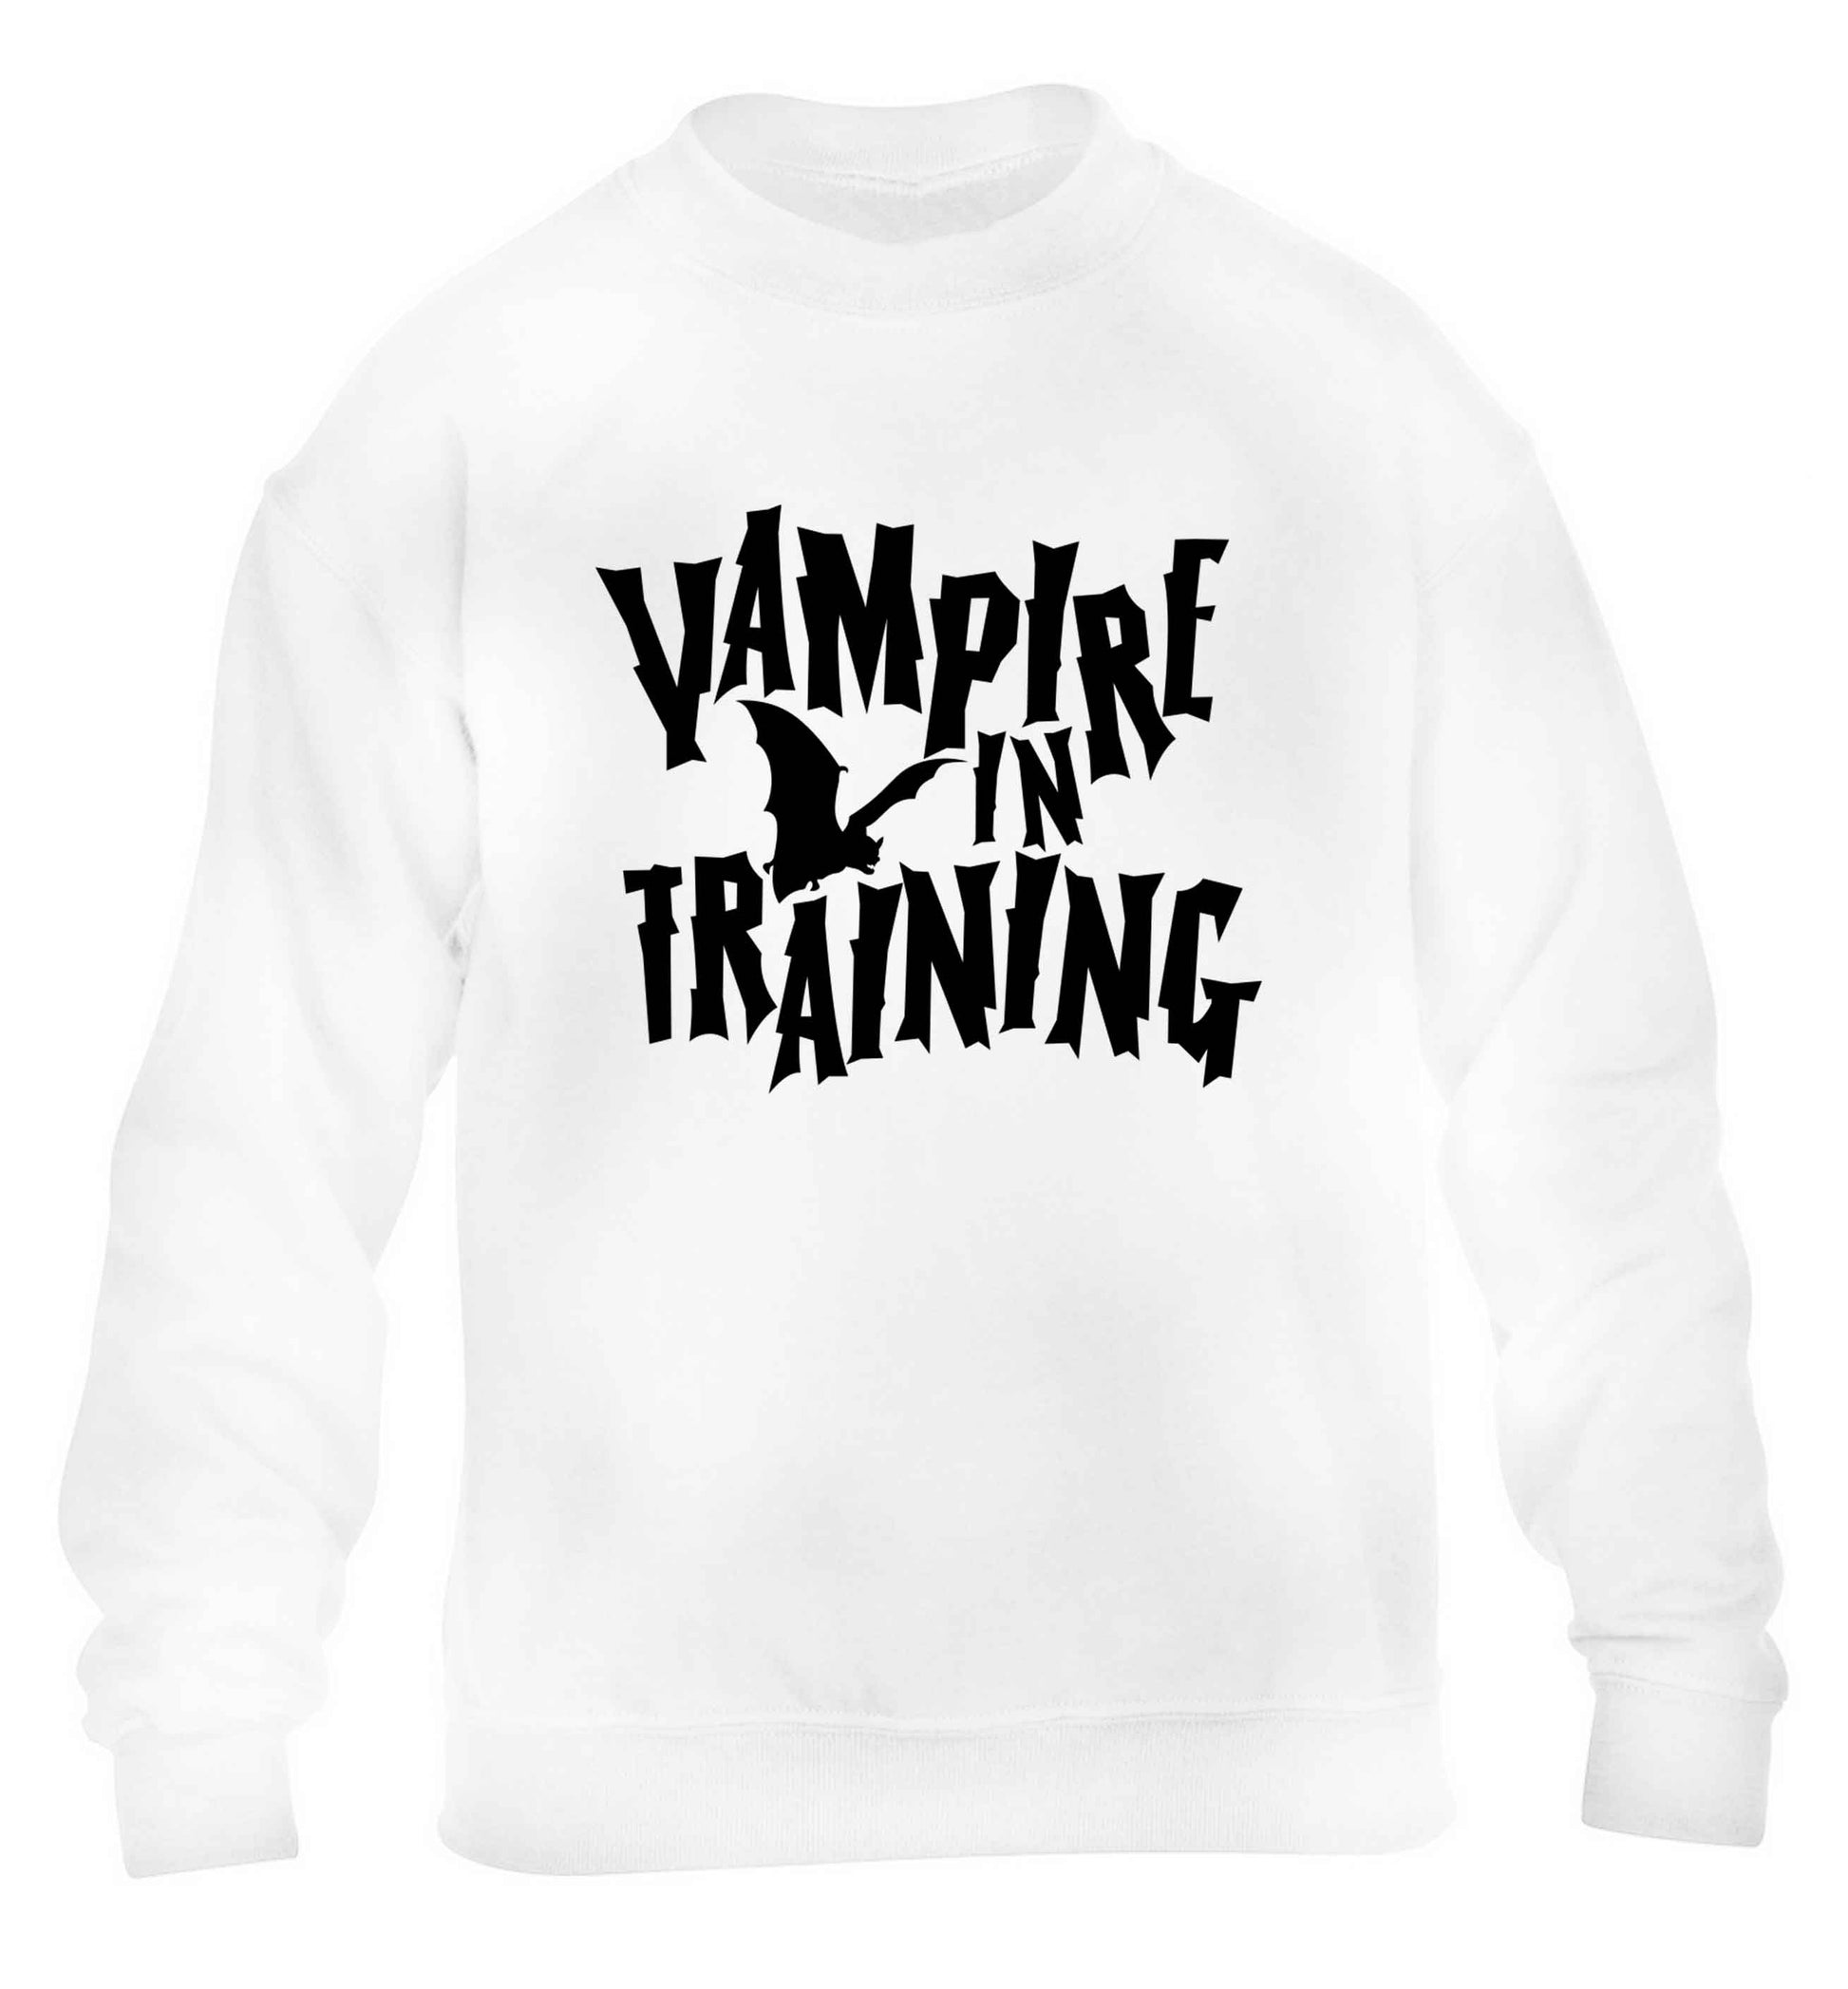 Vampire in training children's white sweater 12-13 Years